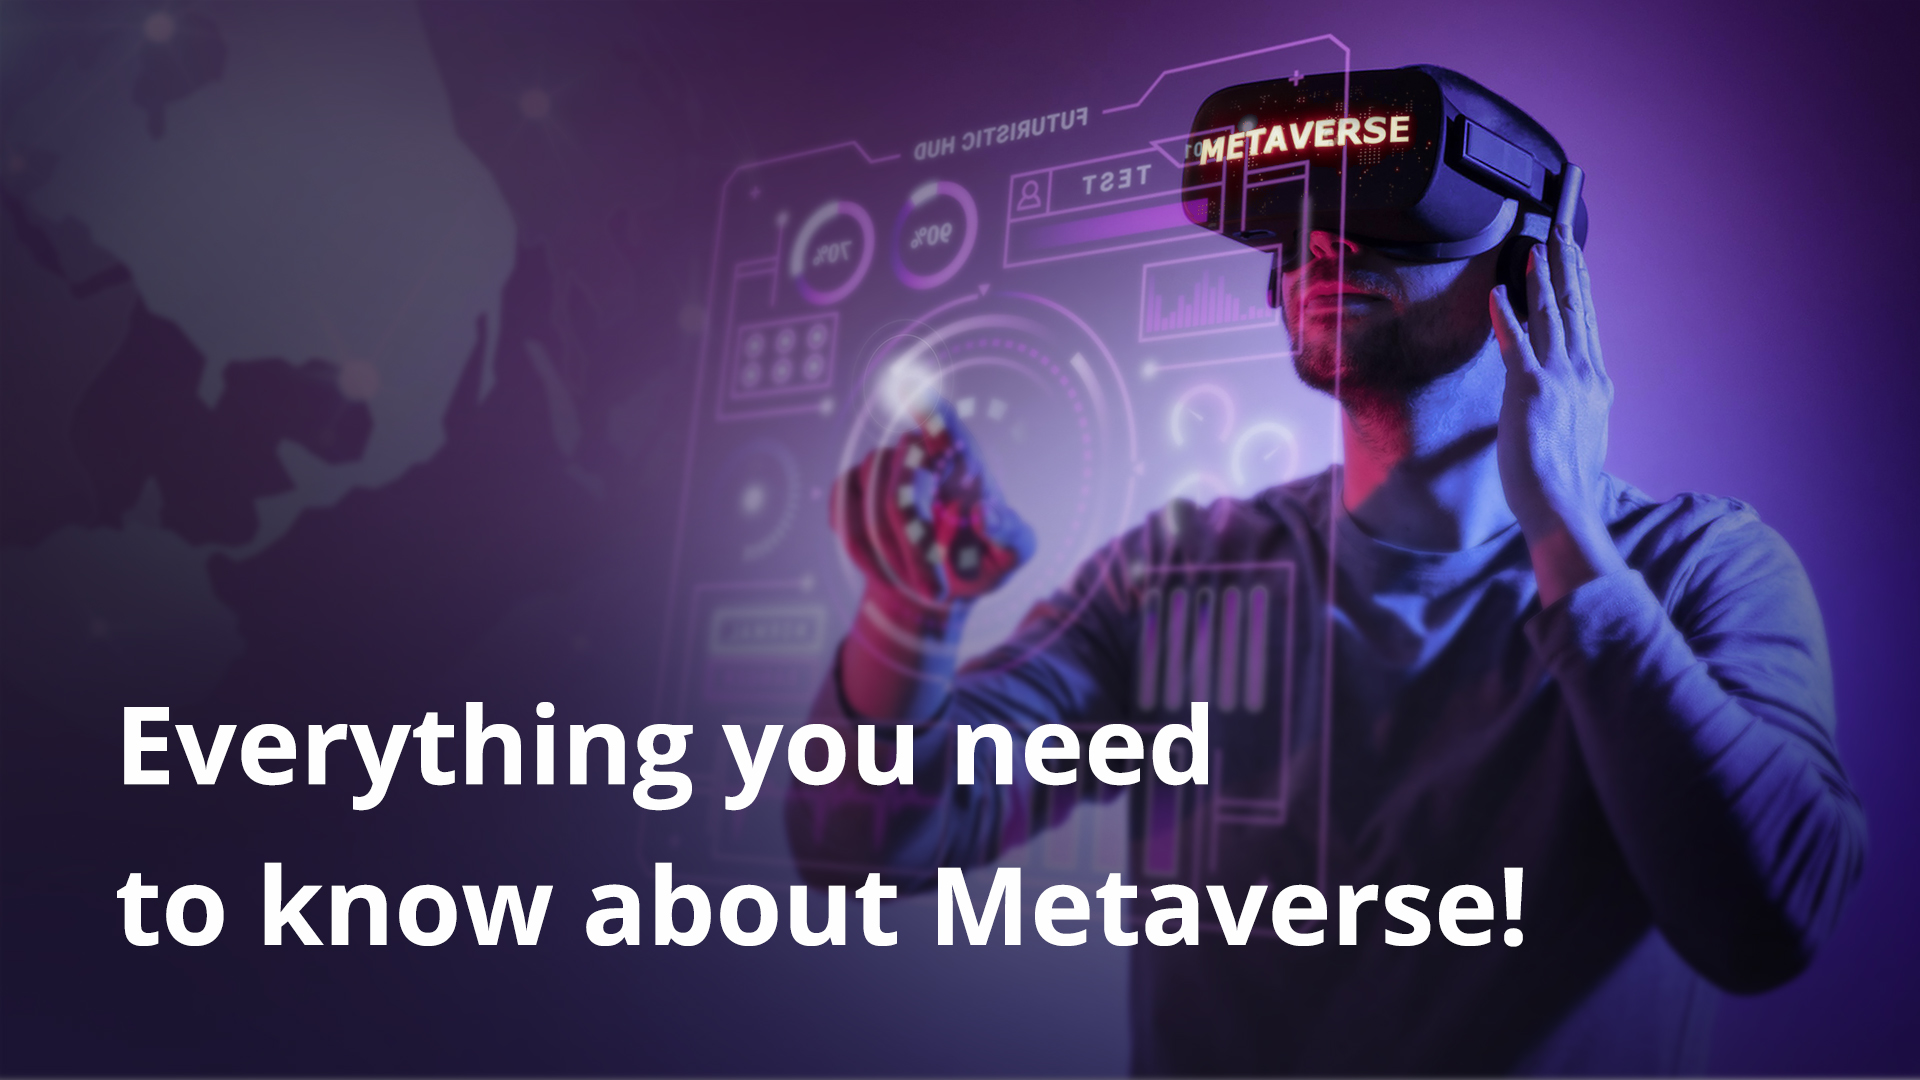 Alles wat je moet weten over Metaverse!